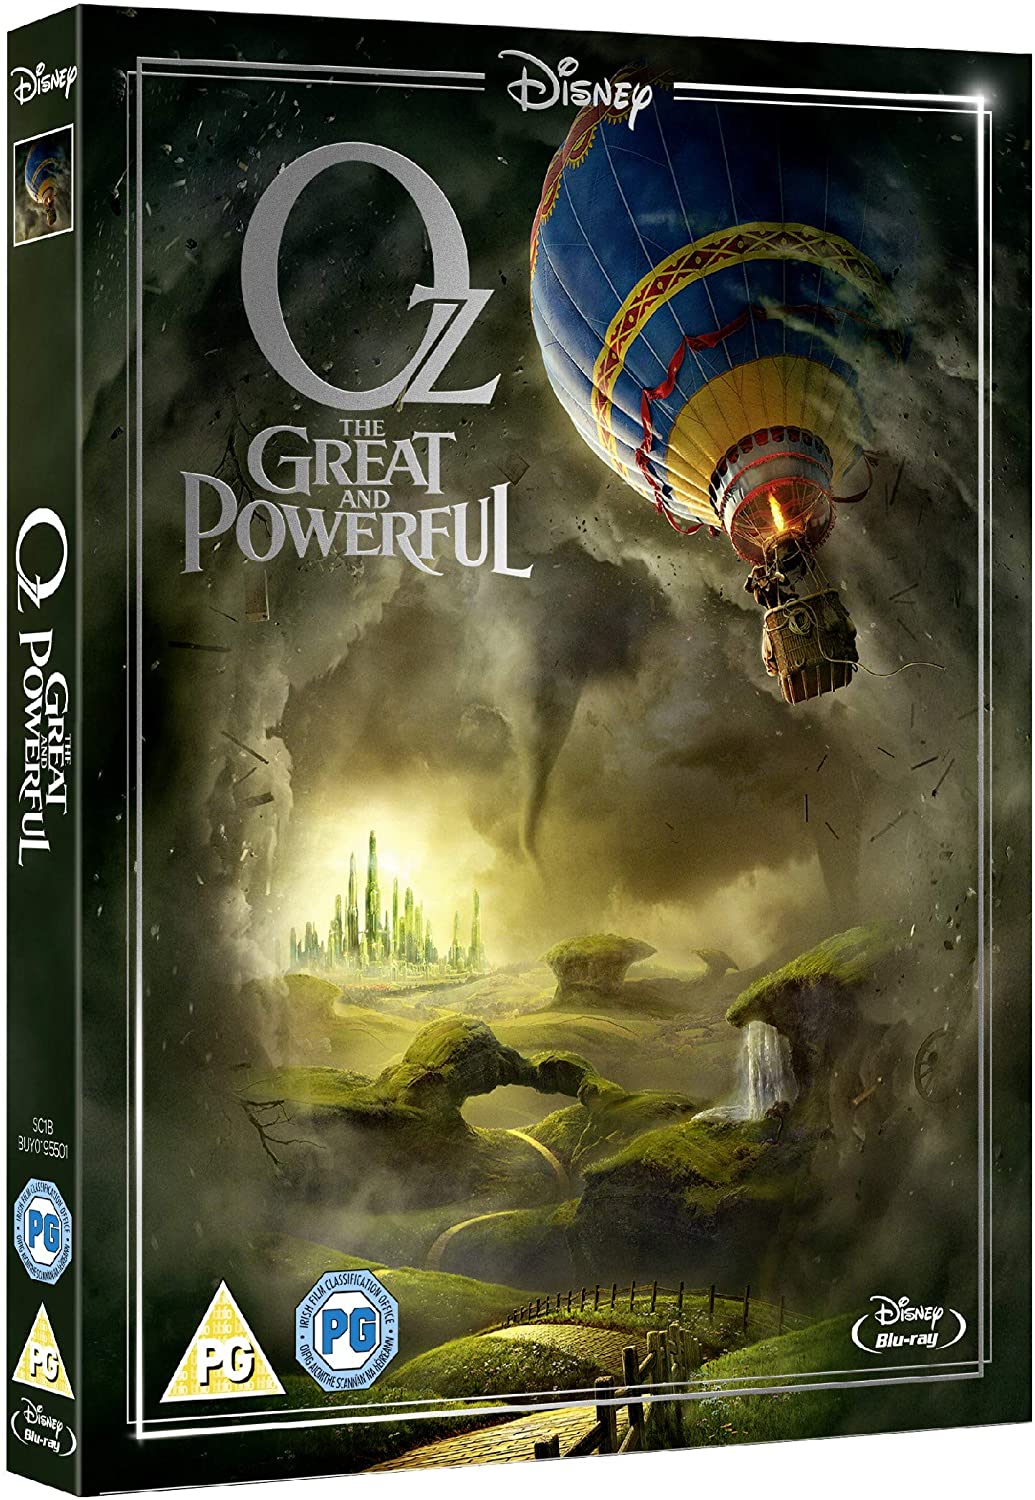 Oz le grand et puissant [Blu-ray] [Région gratuite]